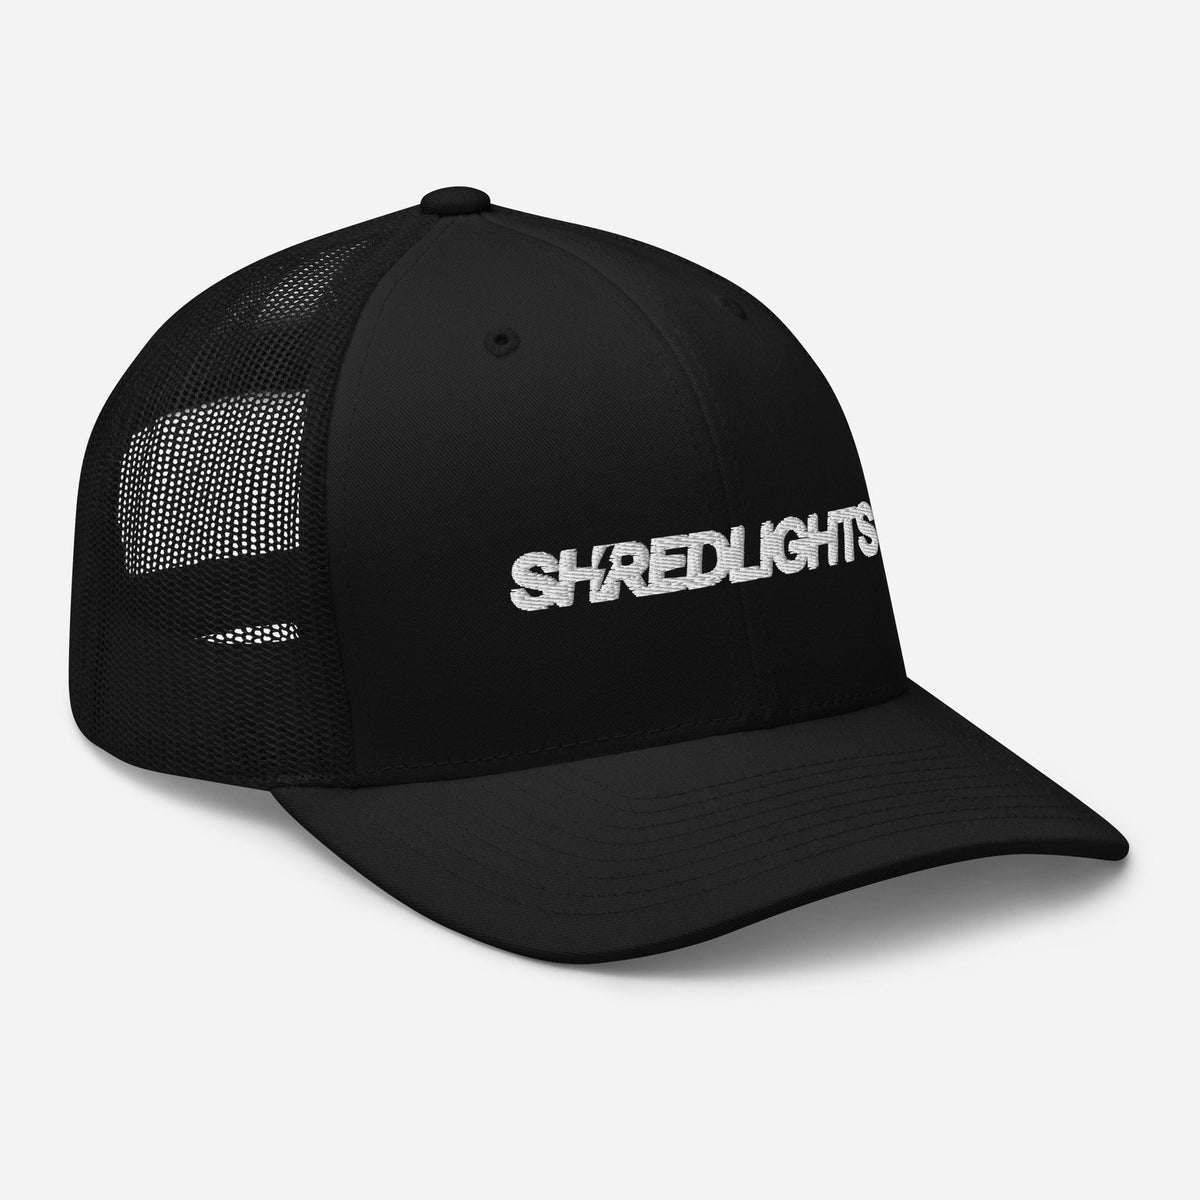 Shredder Cap